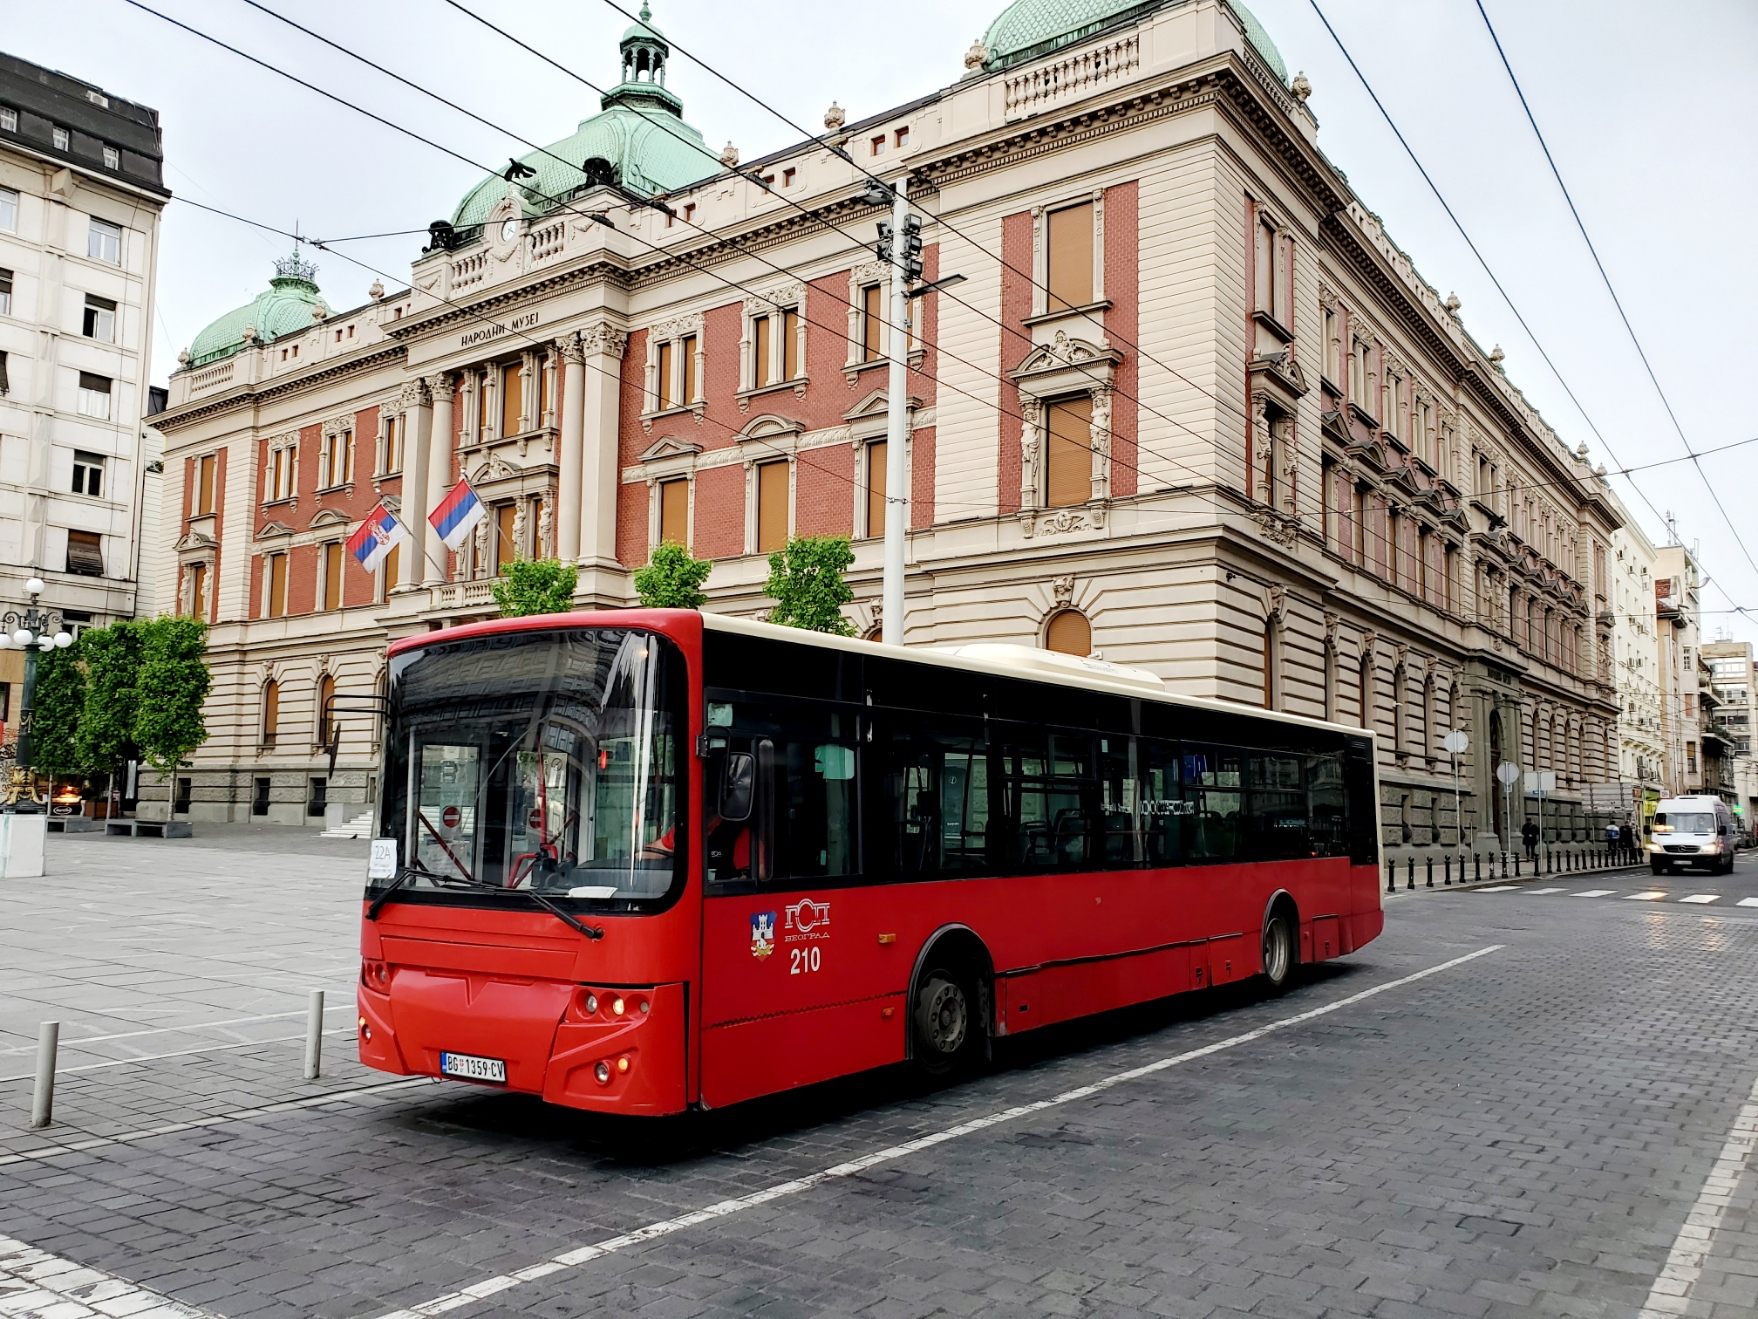 ベオグラードの主要な交通であるバス